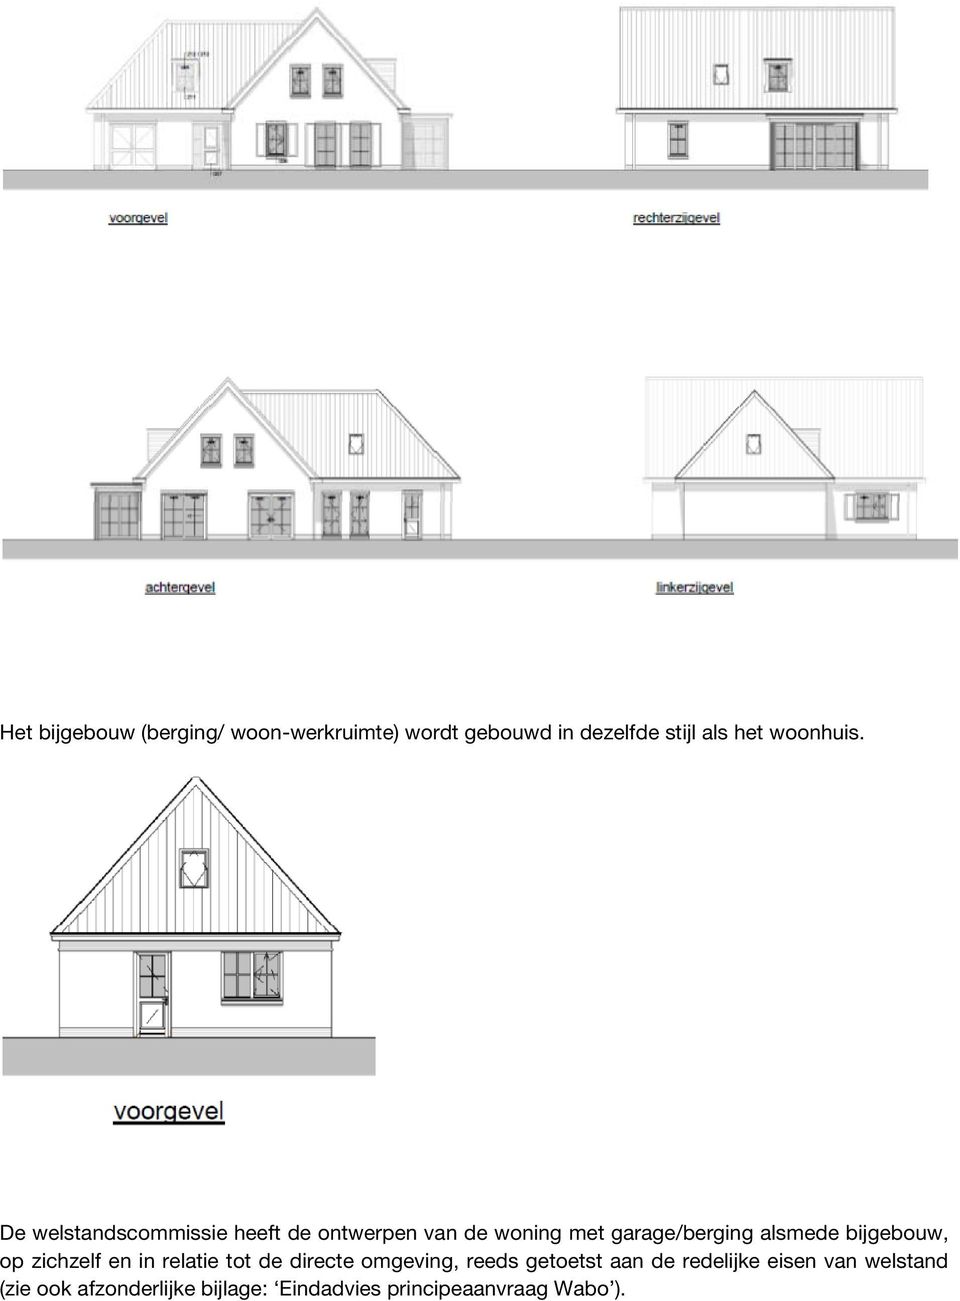 De welstandscommissie heeft de ontwerpen van de woning met garage/berging alsmede